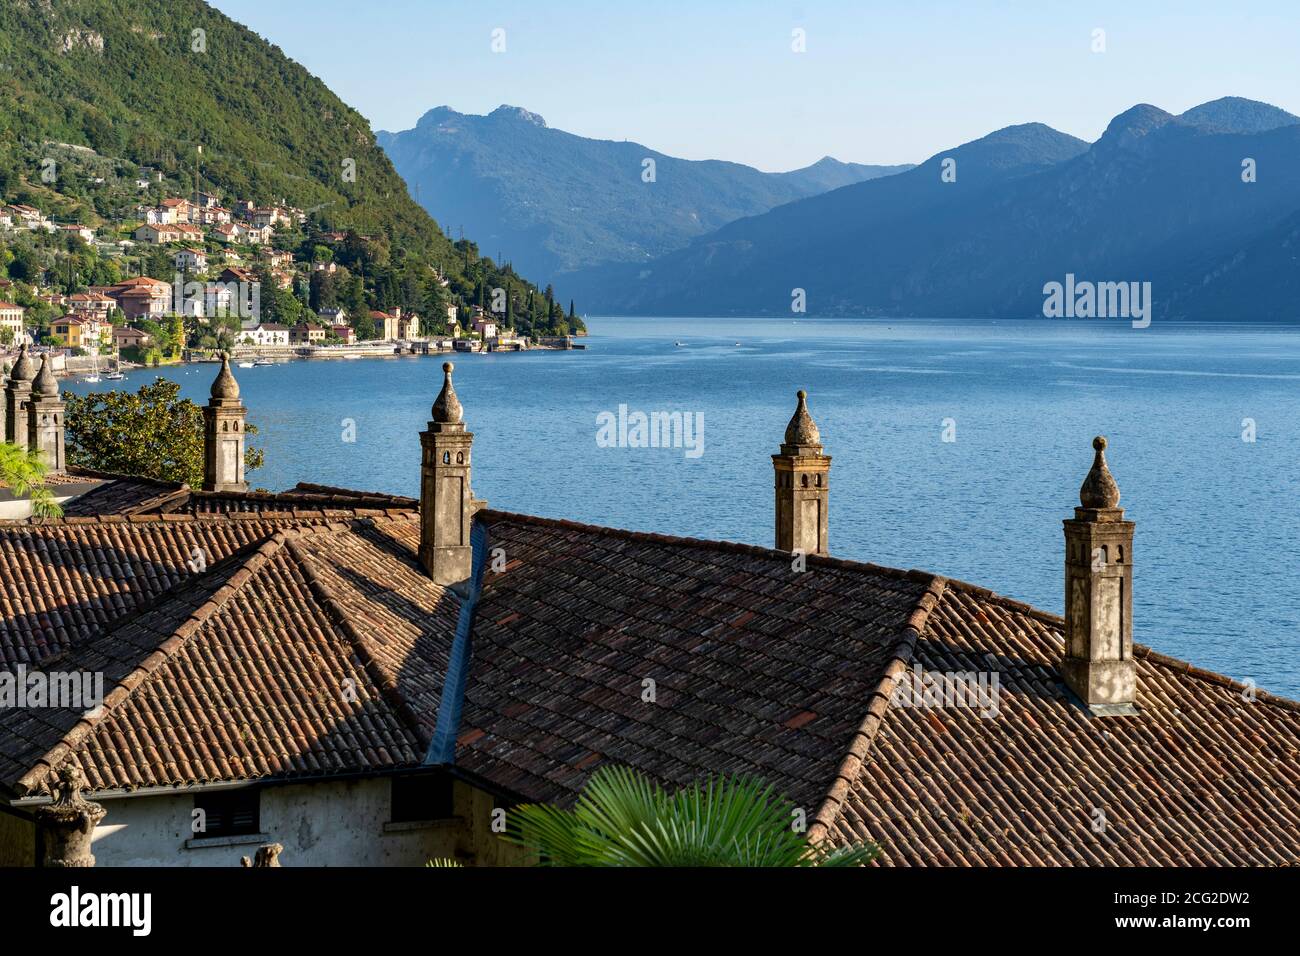 Italia. Lombardia. Lago di Como. Il villaggio colorato di Varenna. Camini tipici sui tetti delle case Foto Stock